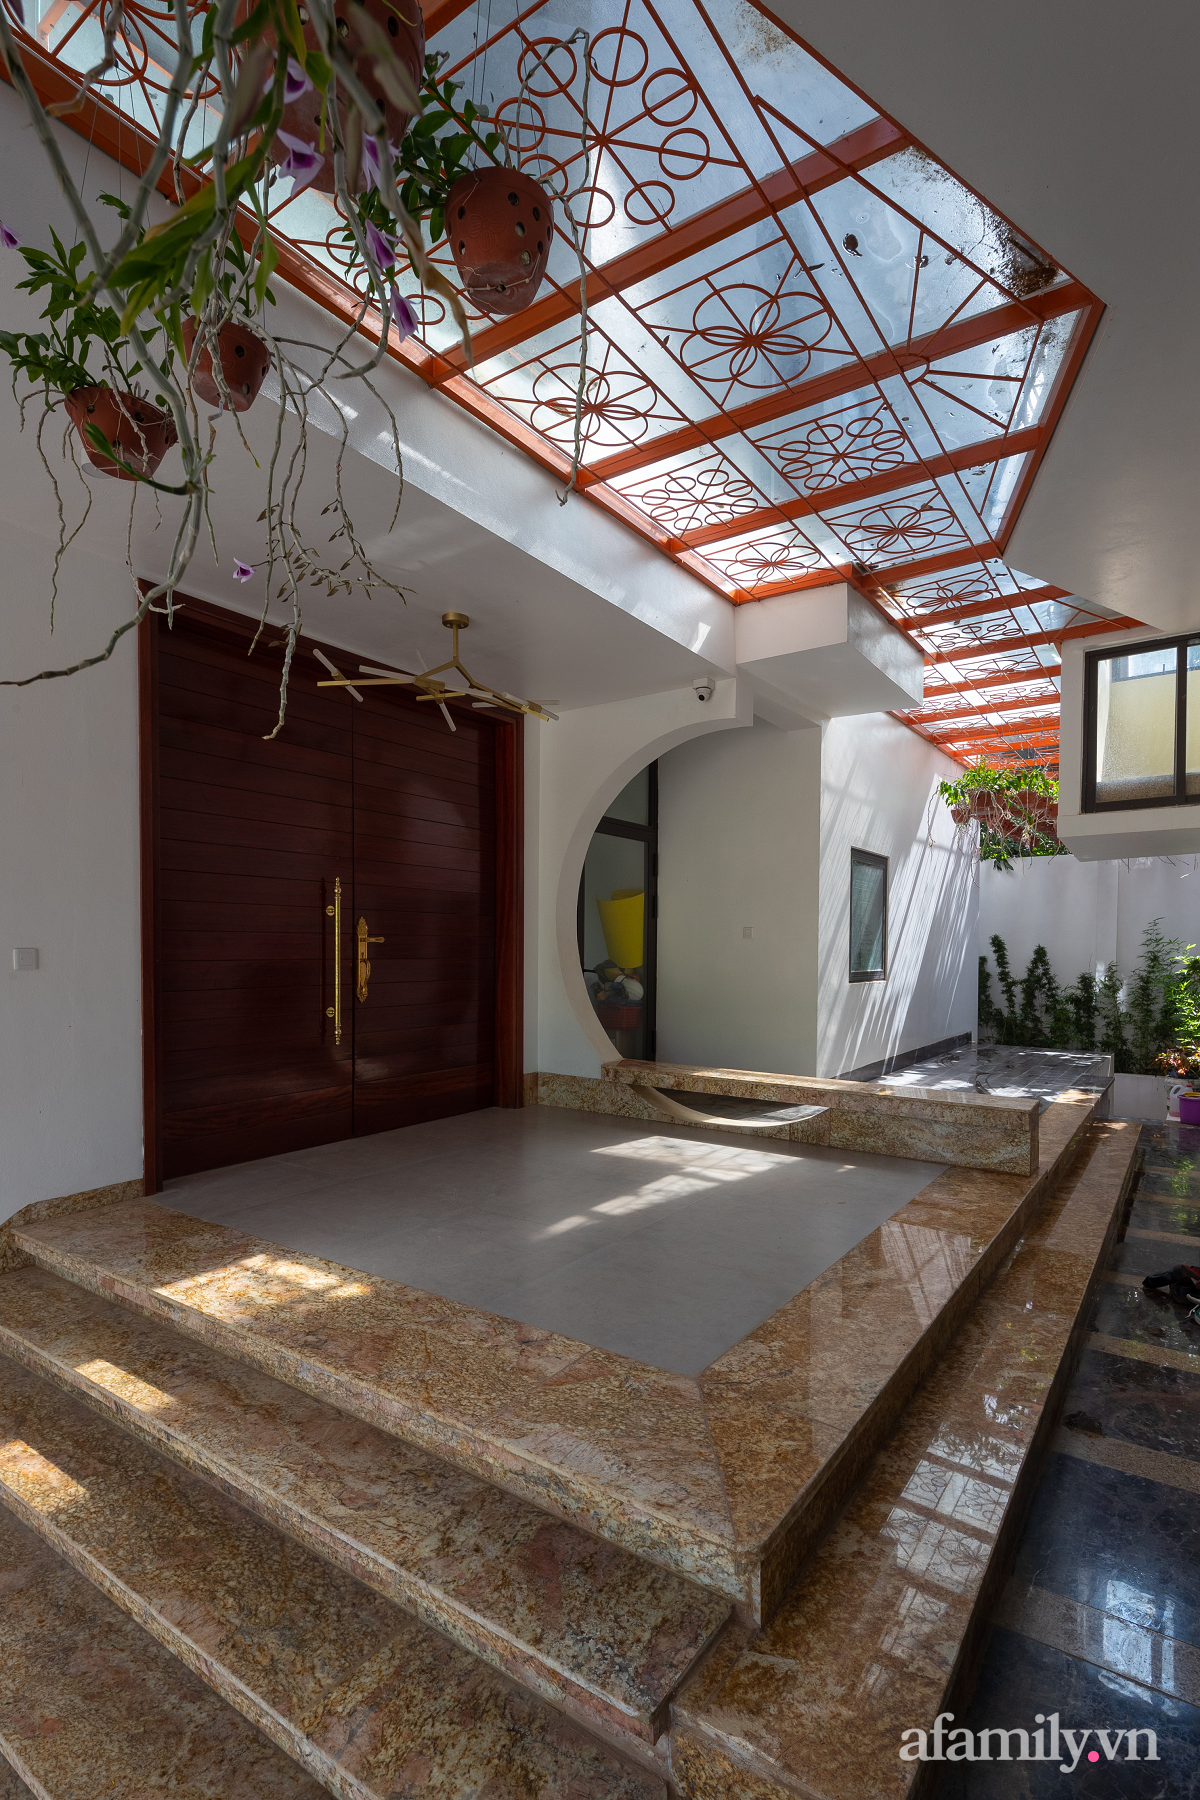 Ngôi nhà quanh năm mát mẻ nhờ thiết kế mái cong lưu thông gió tự nhiên ở Sơn La - Ảnh 4.